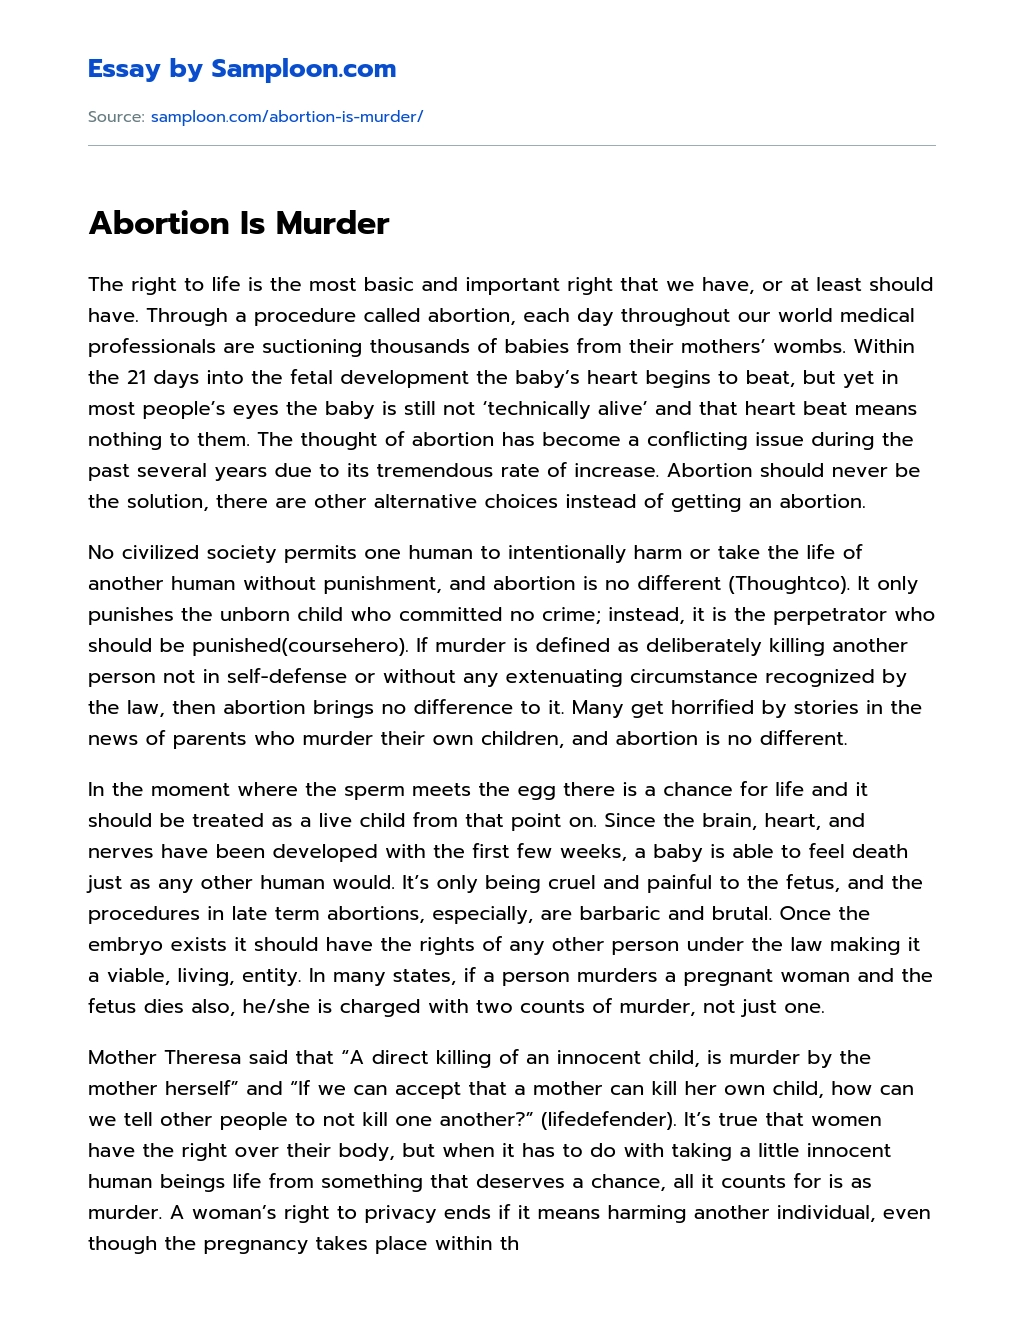 Abortion Is Murder essay